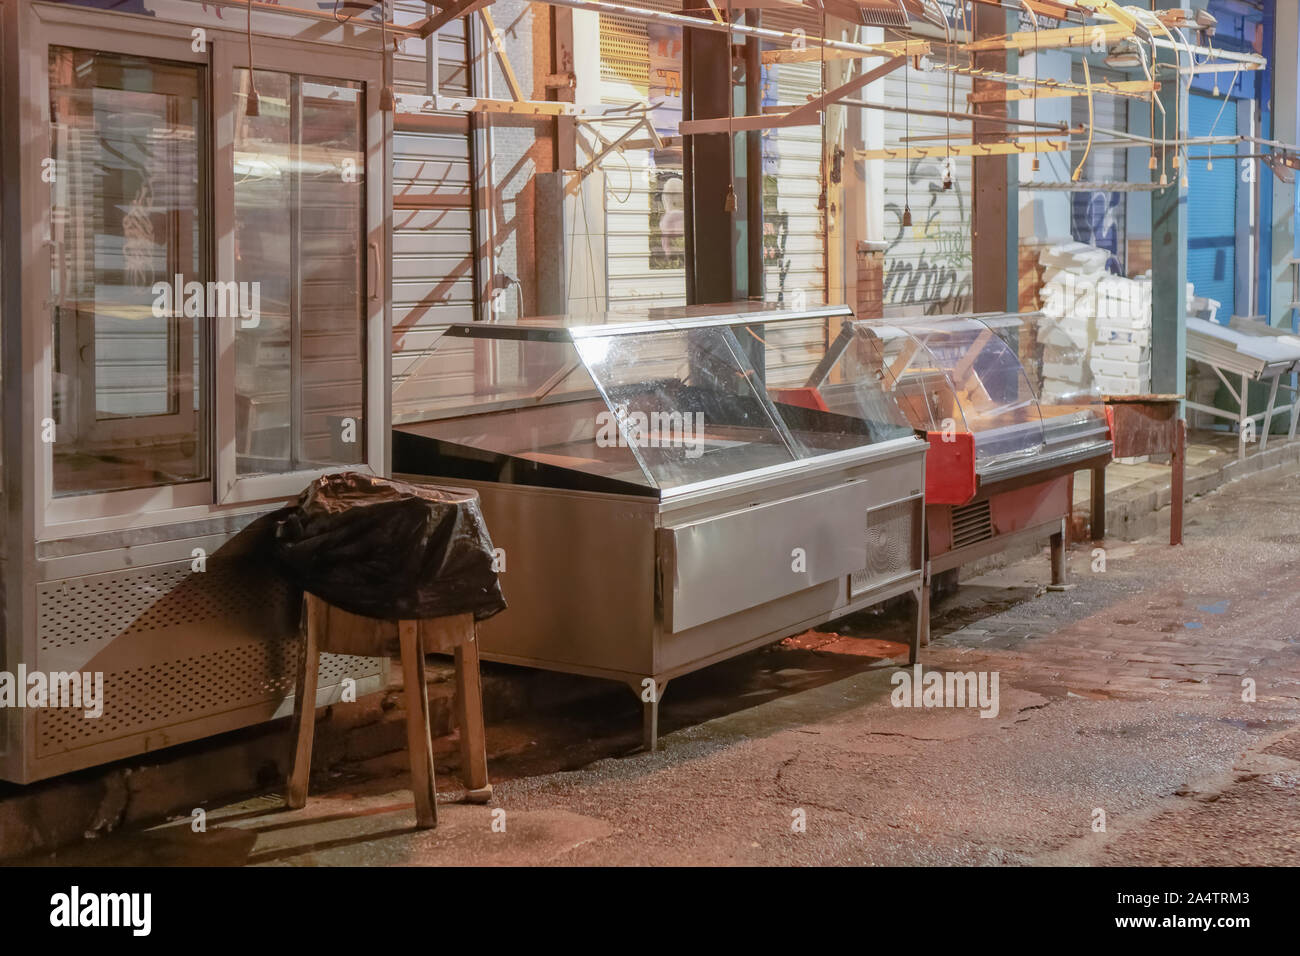 Leere Metzger Kühlschränke auf dem Markt. Nachtansicht von Fleisch shop Kühlschrank Ausstattung aussen geschlossene Geschäfte in der kapani Markt in Thessaloniki, Griechenland. Stockfoto